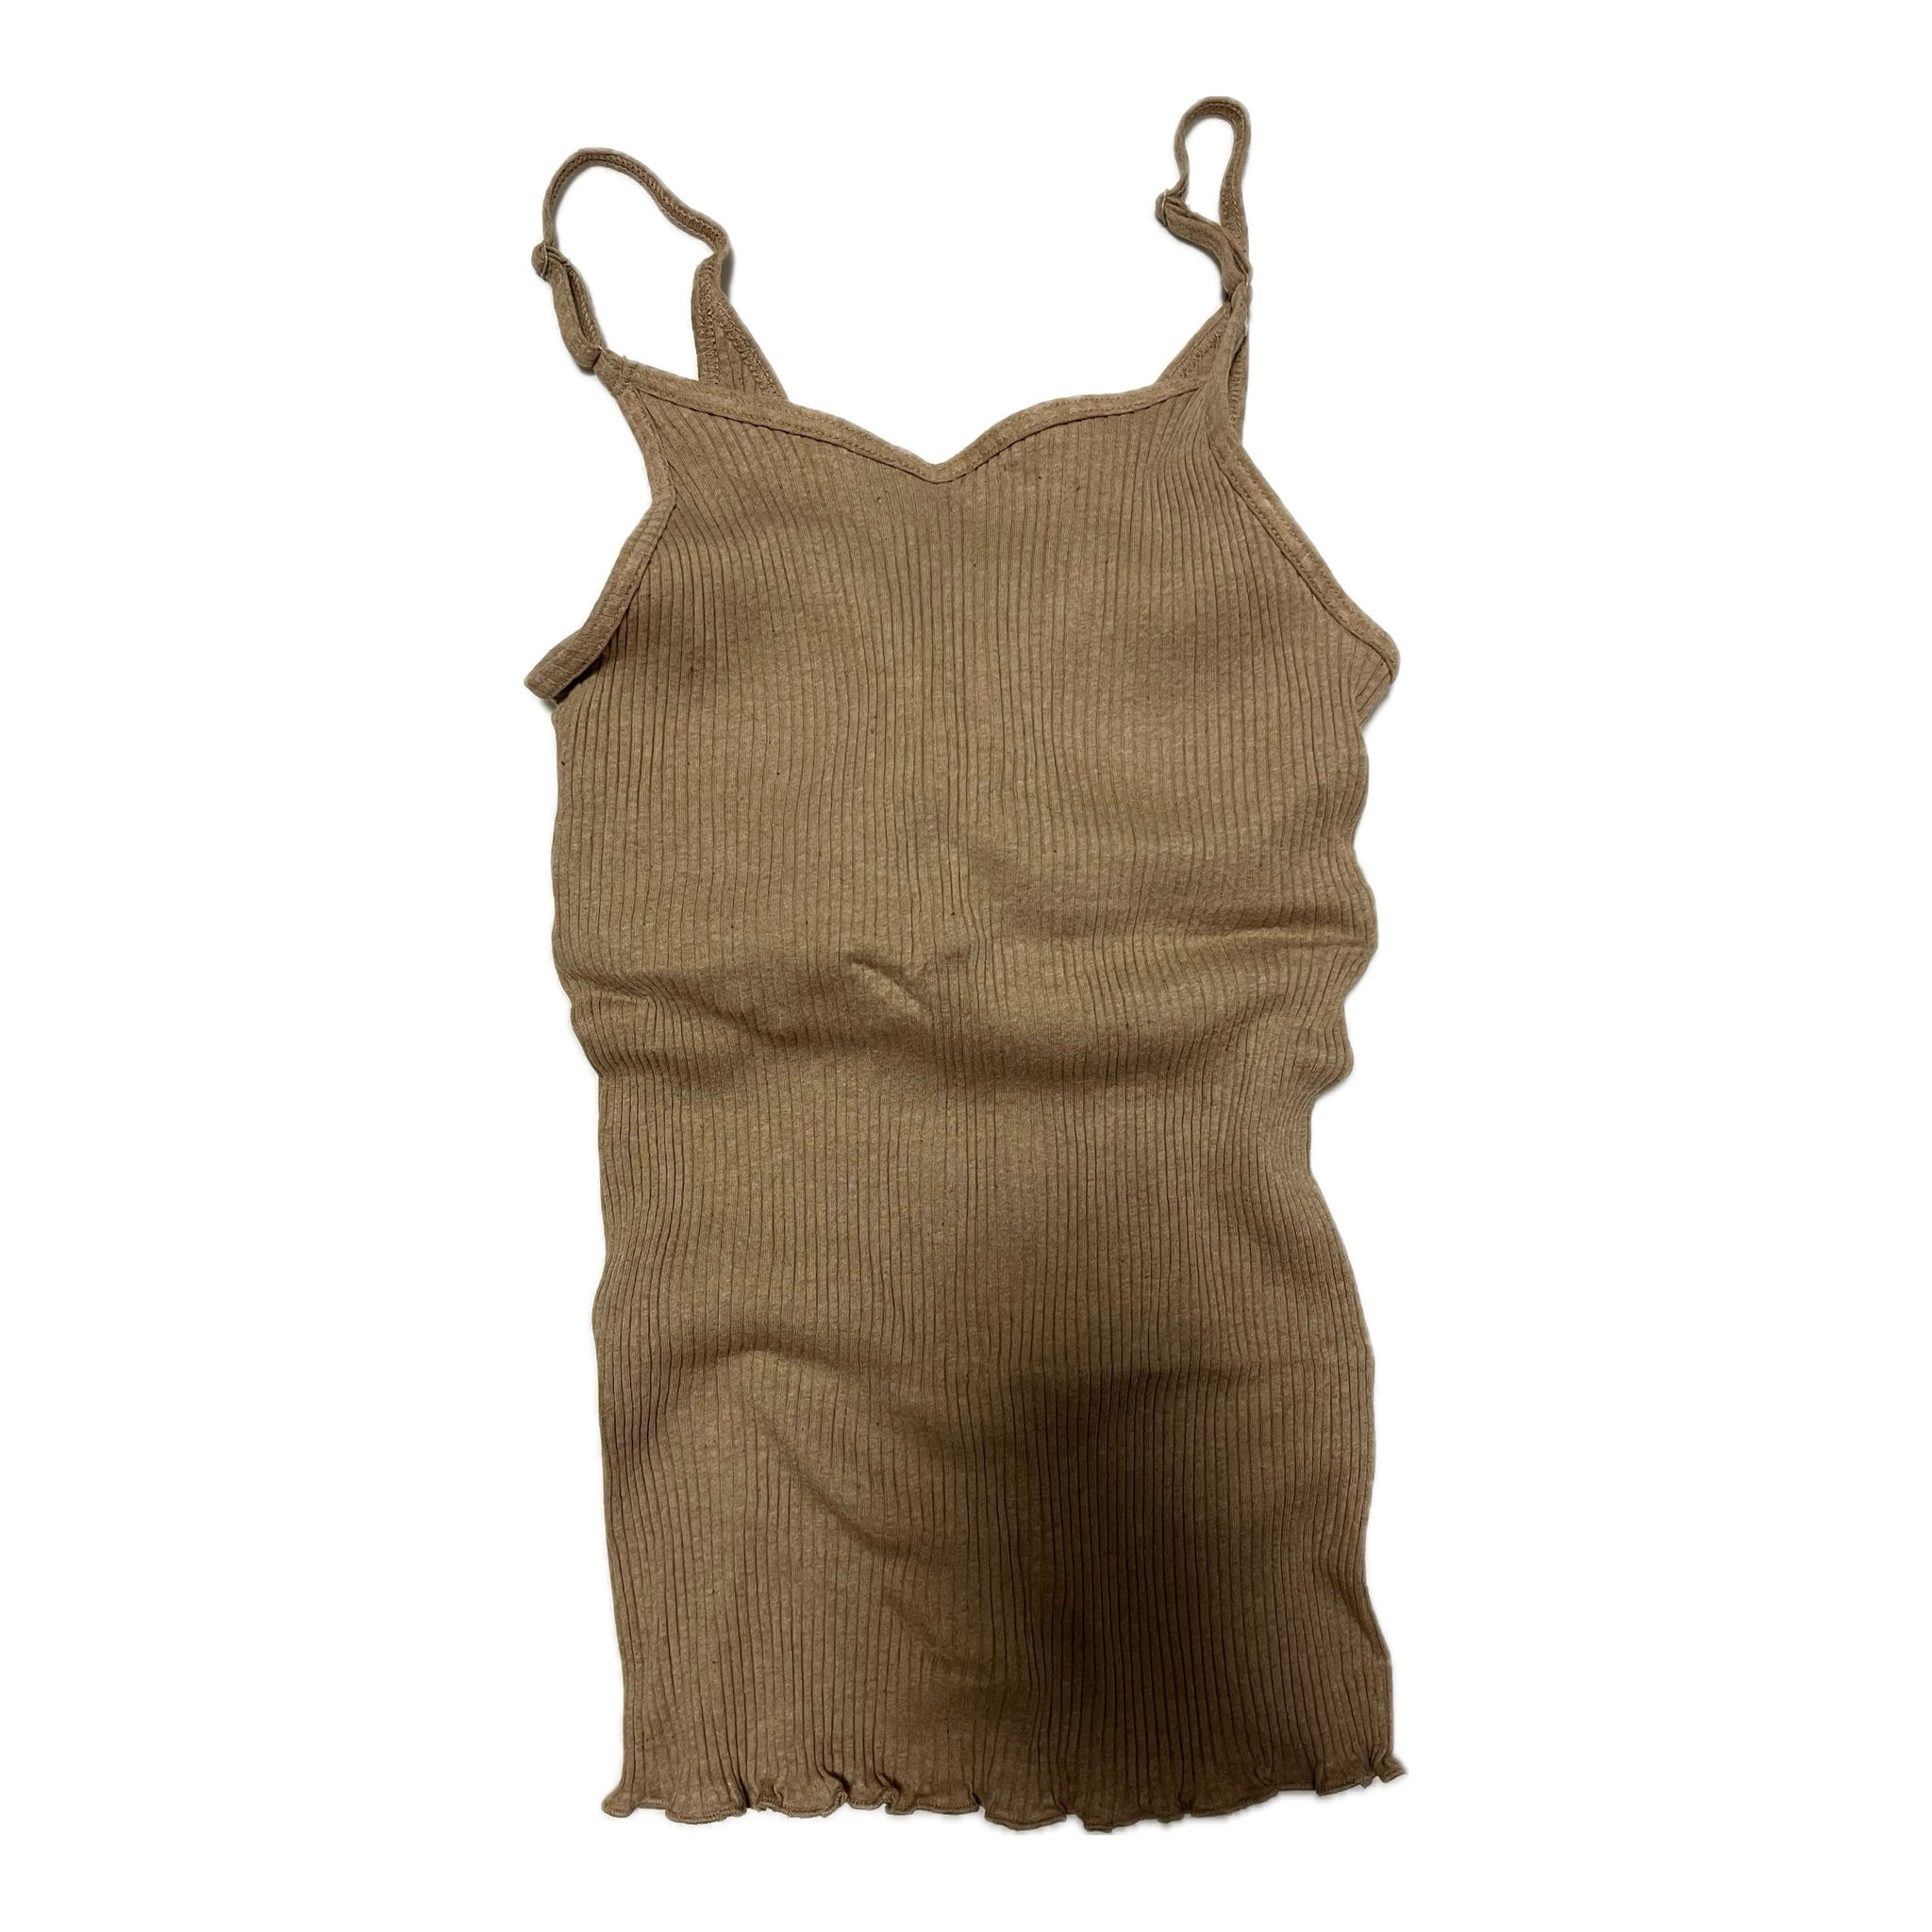 オーガニックコットン under wearセット(brown cotton)| Lochie |